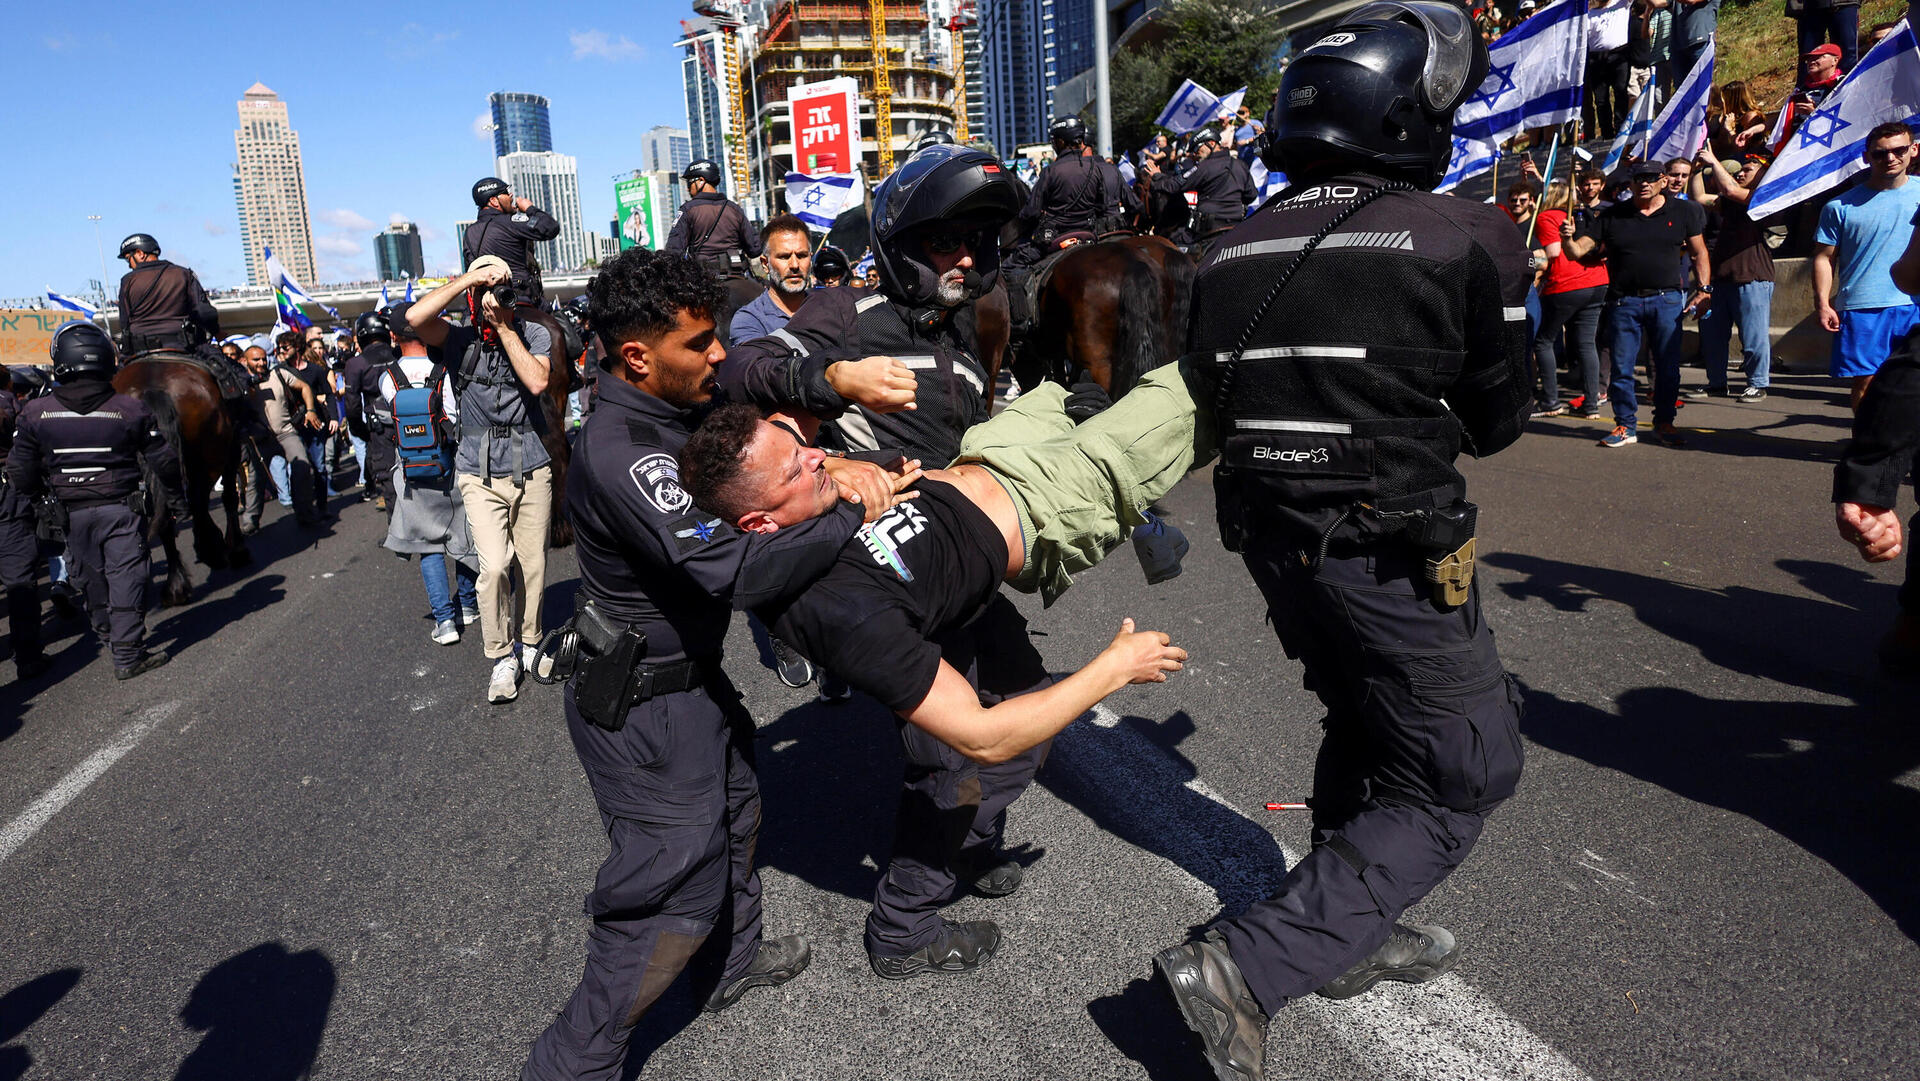 משטרה עימותים מפגינים הפגנה איילון צפון תל אביב